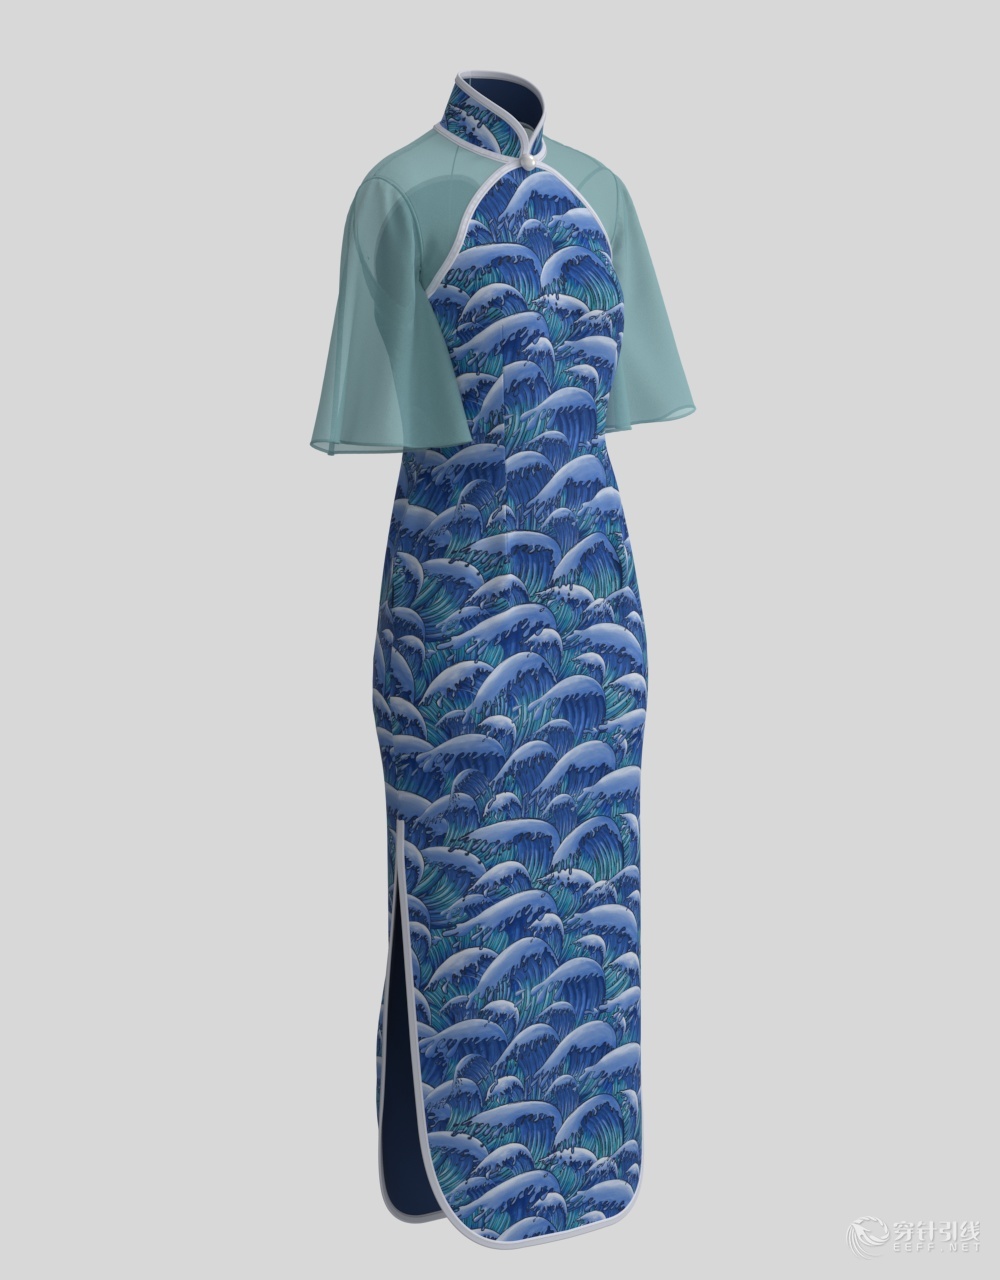 原创服装3d设计图一个旗袍版到底可以有多少种花样